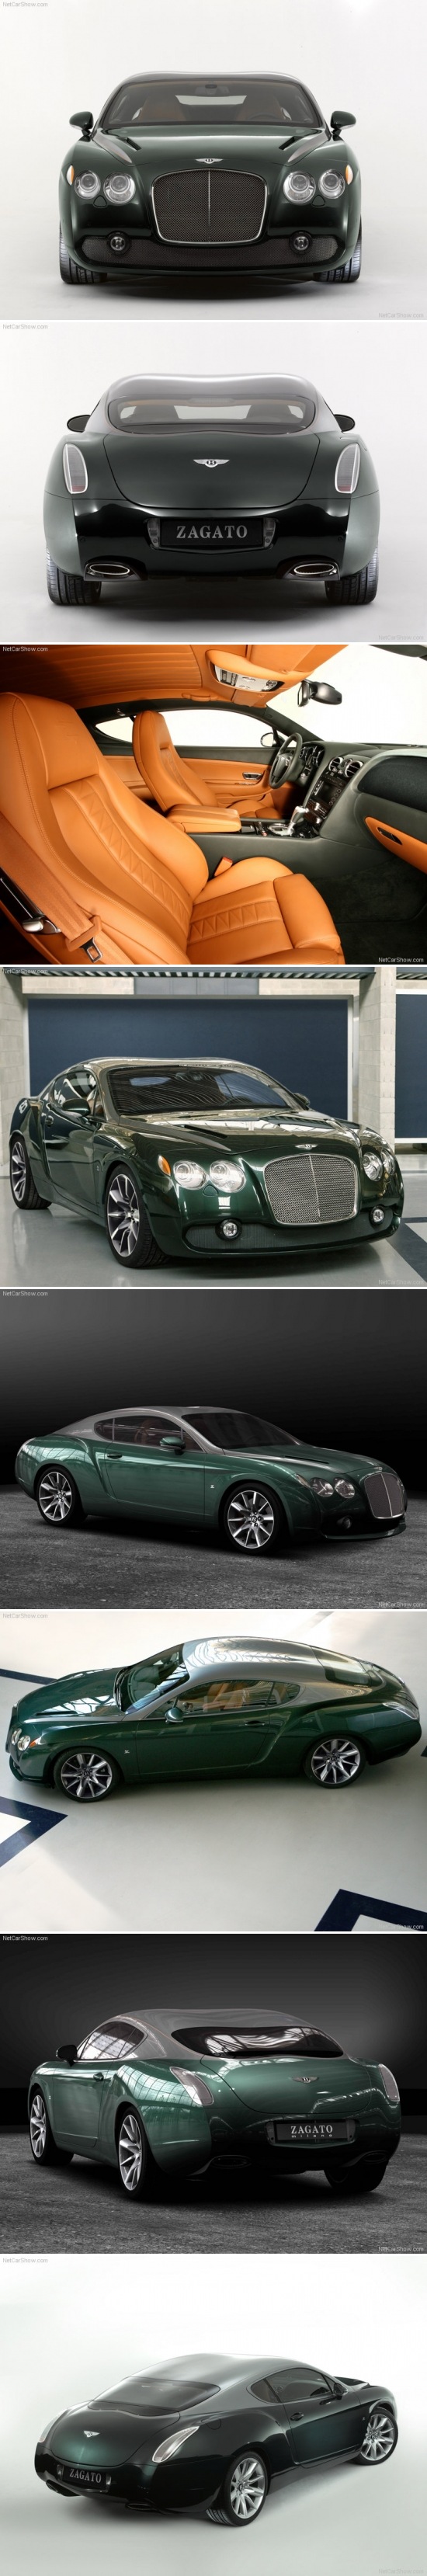 Bentley GTZ Zagato Concept